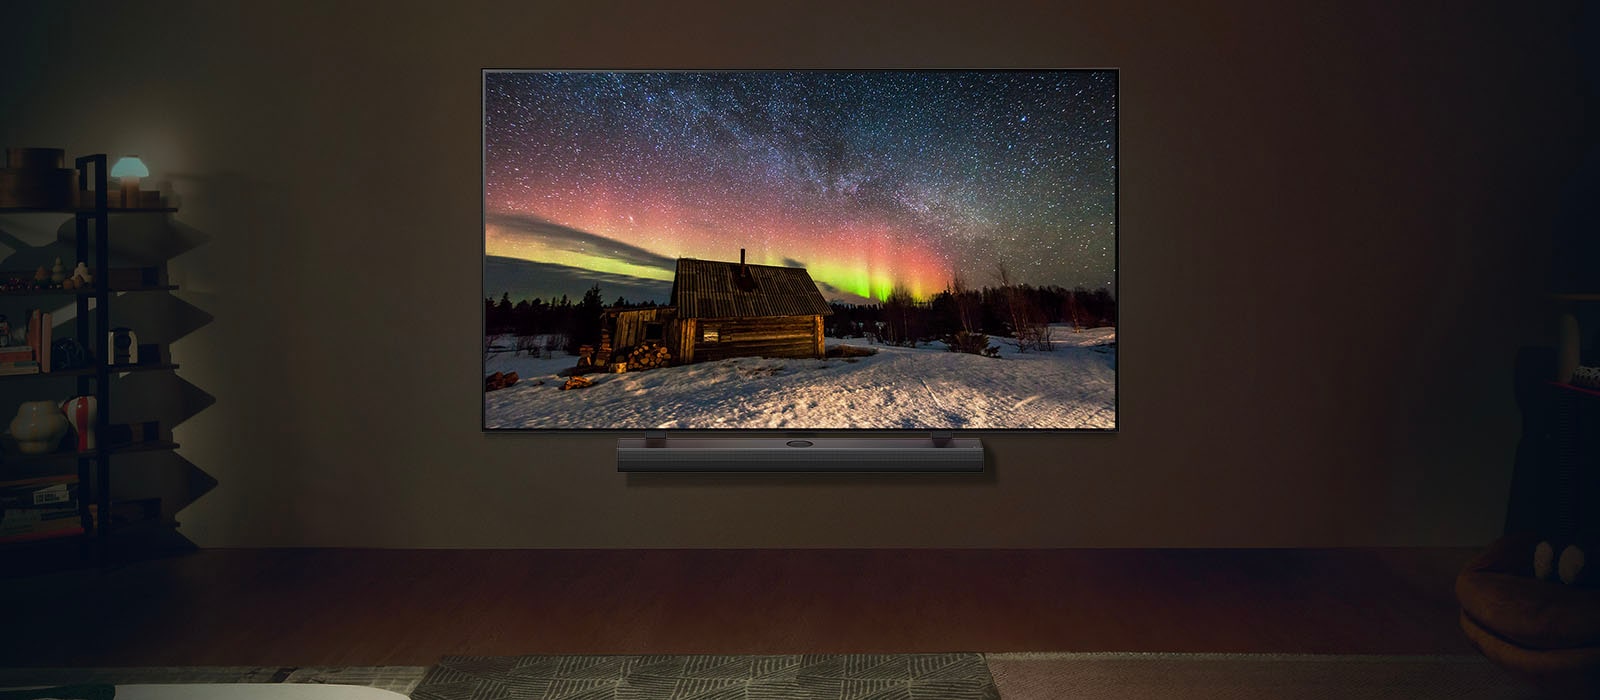 Televizor LG TV i kućno kino LG Soundbar u modernom stambenom prostoru noću. Slika polarne svjetlosti na zaslonu prikazuje se s idealnom razinom osvjetljenja.